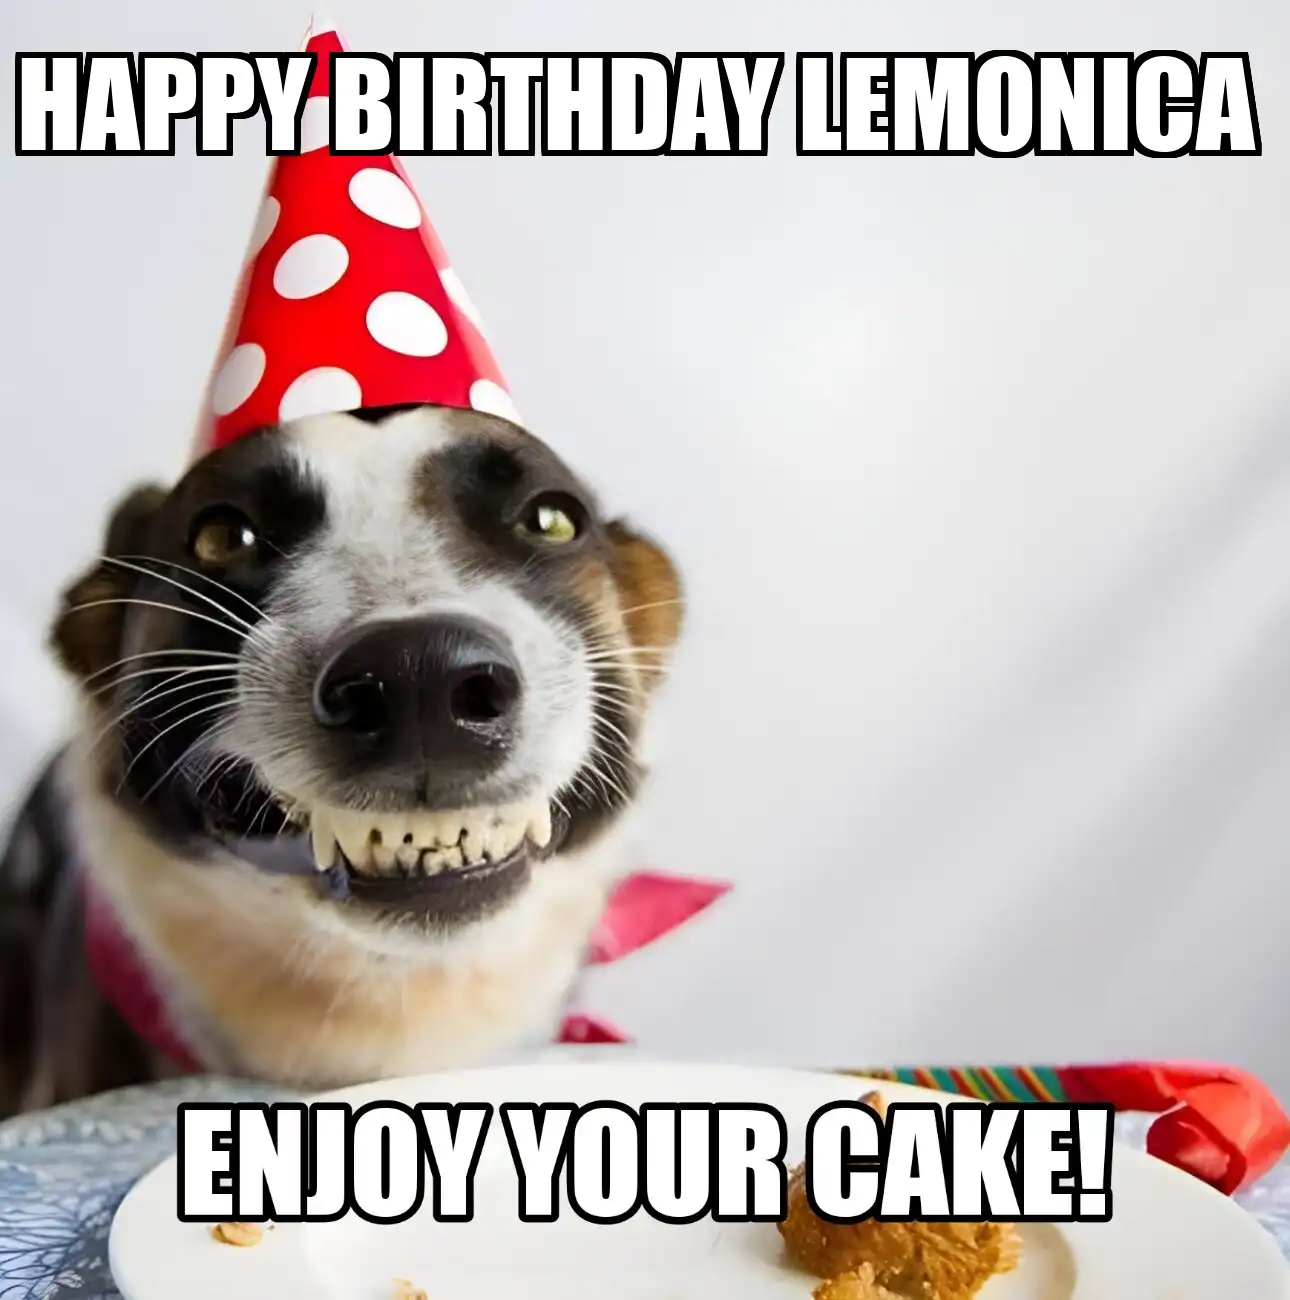 Happy Birthday Lemonica Enjoy Your Cake Dog Meme